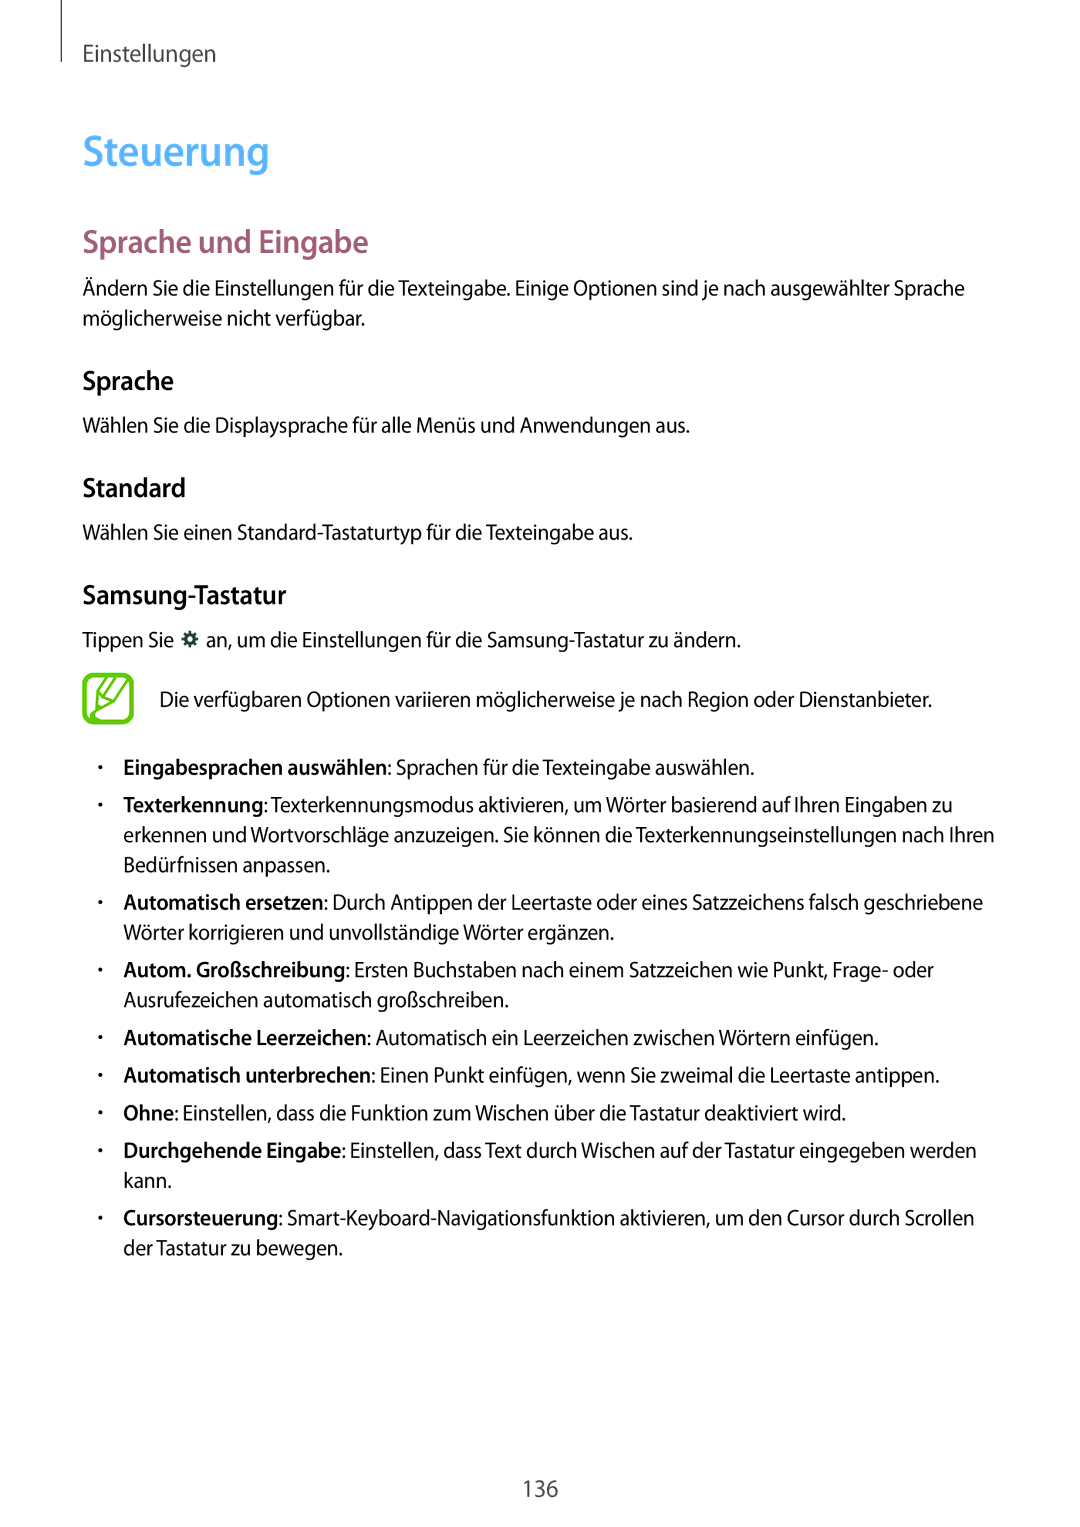 Samsung SM-T9000ZKADBT, SM-T9000ZWADBT, SM-T9000ZKAXEF manual Steuerung, Sprache und Eingabe, Standard, Samsung-Tastatur 